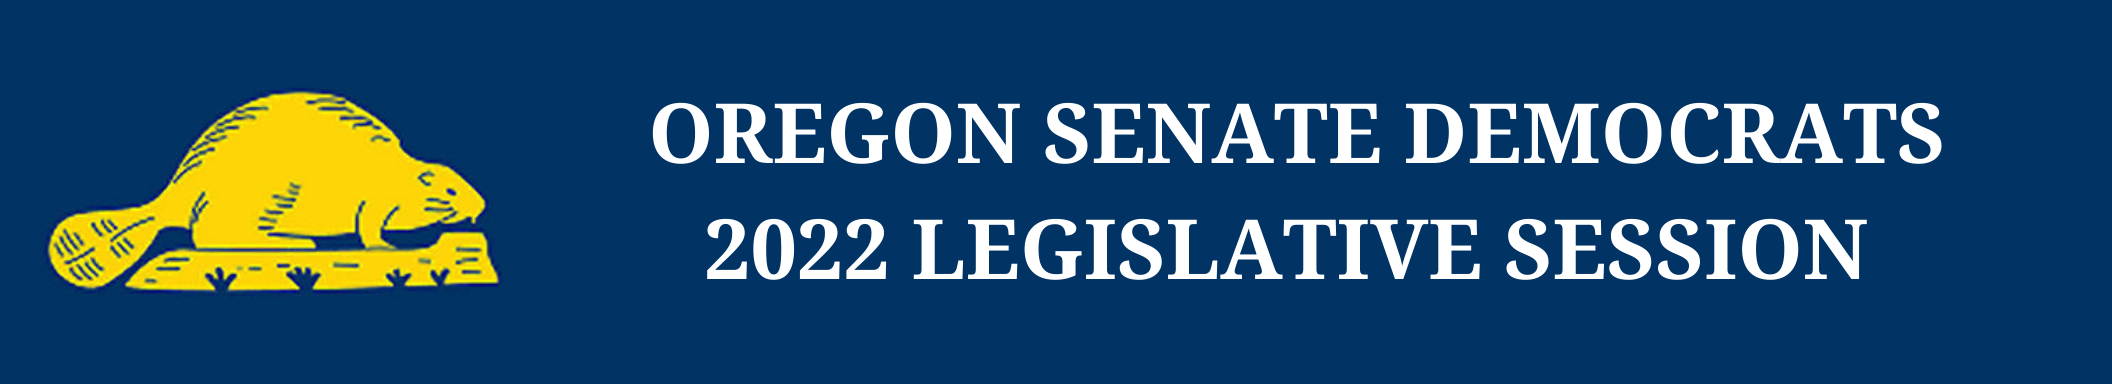 OREGON SENATE DEMOCRATS 2022 LEGISLATIVE SESSION HIGHLIGHTS (2).png